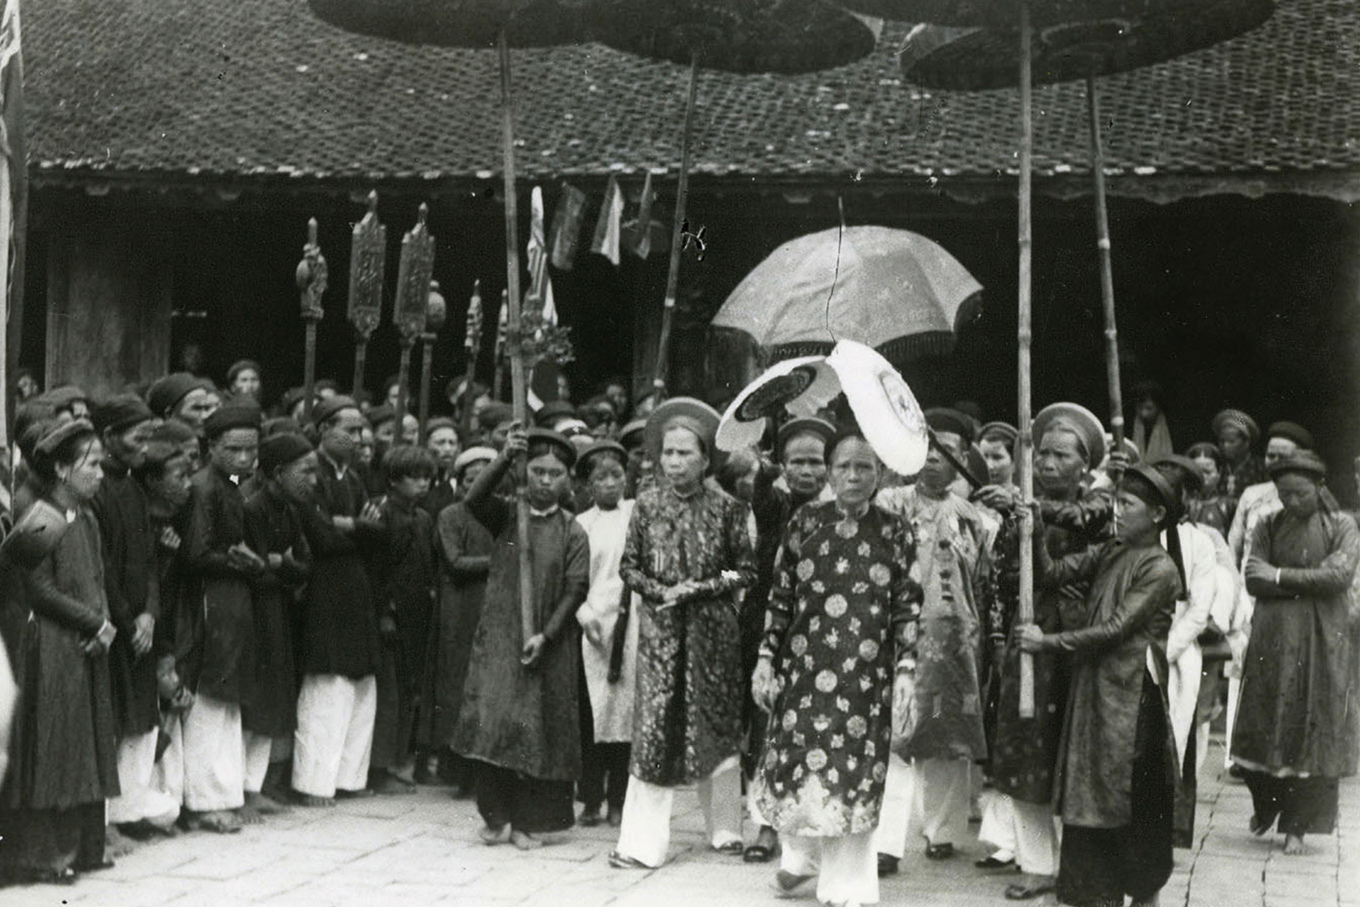 Chuyến thăm của Hoàng thái hậu Từ Cung ở Thanh Hóa năm 1935 qua ống kính nhiếp ảnh gia Nghiêm Xuân Thức. Trong sách, ngoài giới thiệu sự nghiệp của các nhiếp ảnh gia người Pháp và các nước khác tại Việt Nam, tác giả liệt kê một số hình chụp cùng tên tuổi những người Việt tham gia vào buổi đầu sơ khai của nhiếp ảnh.